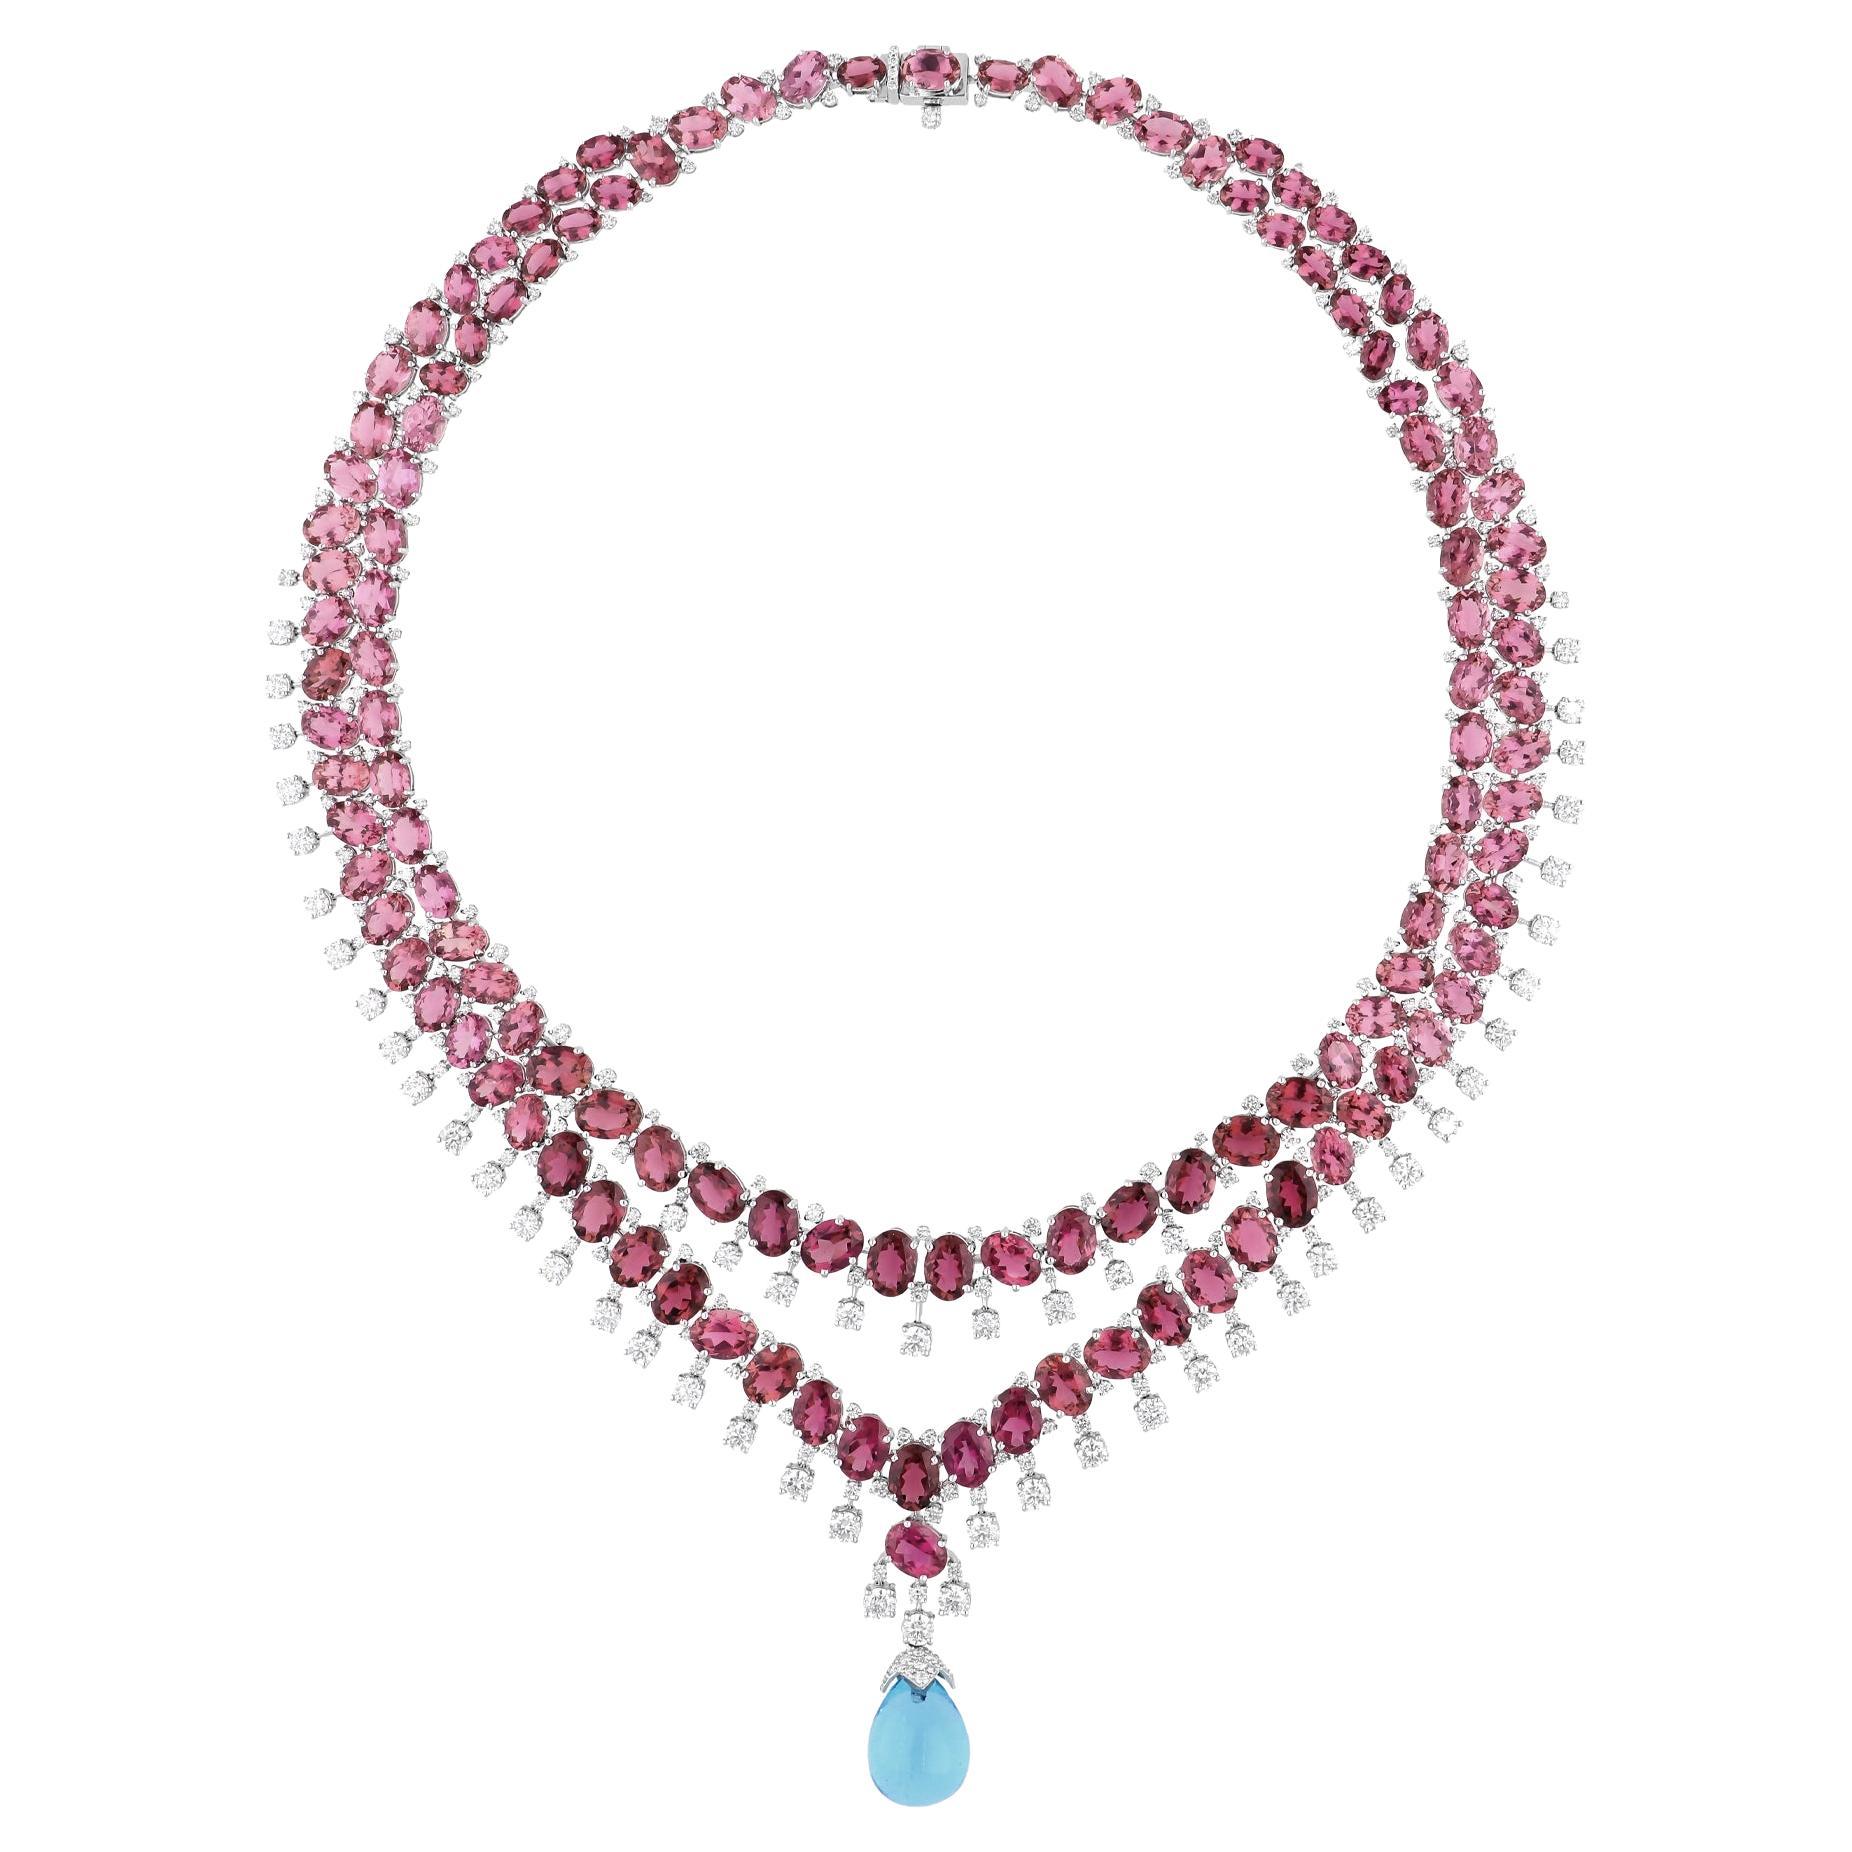 Pink Tourmaline Gemstone Necklace Diamond Blue Topaz 18 Karat White Gold Jewelry For Sale